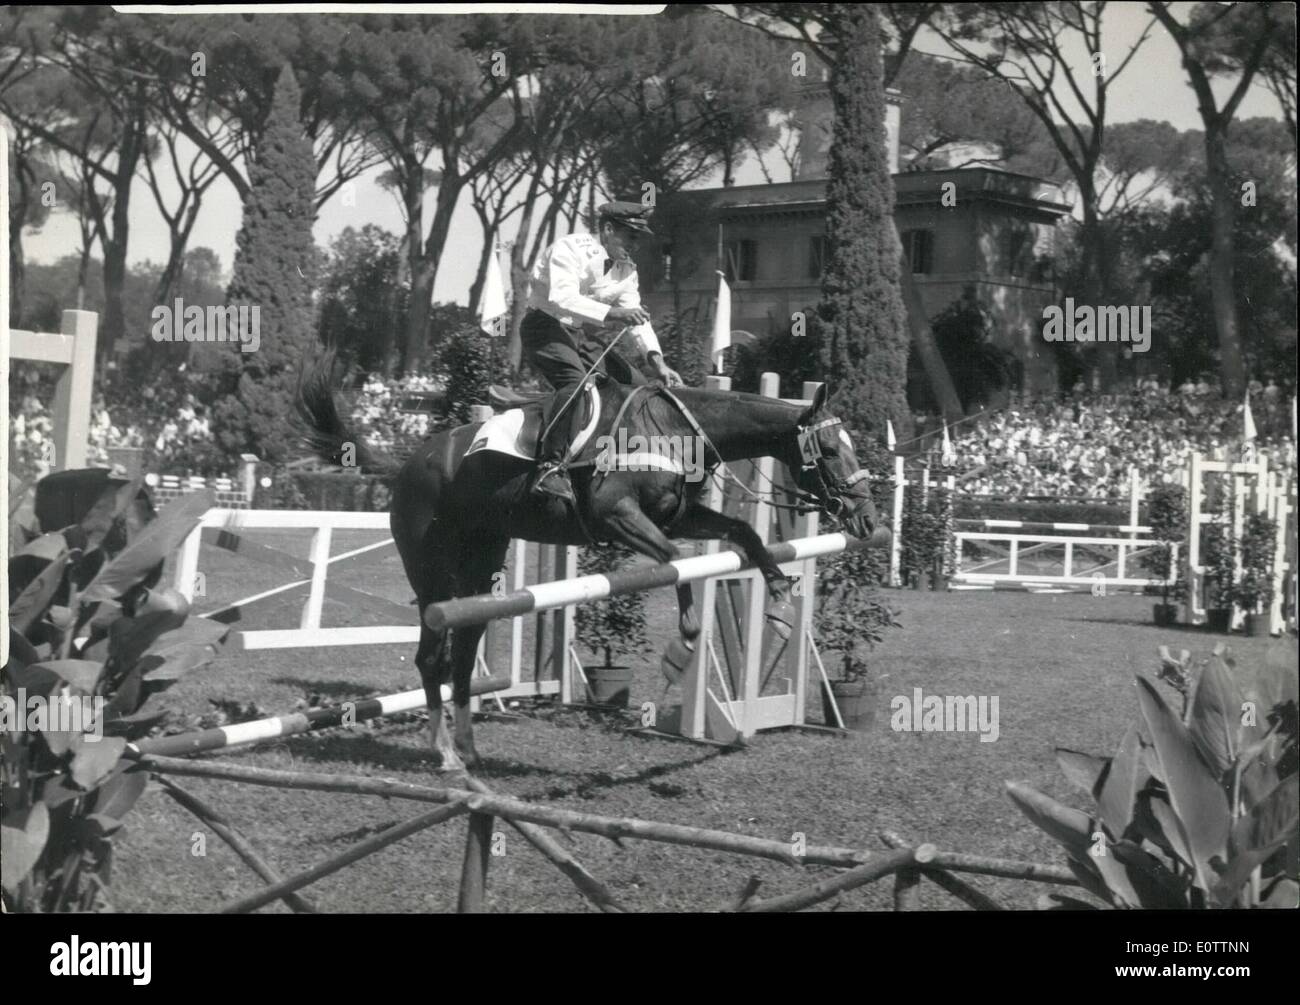 Septembre 09, 1960 - Jeux Olympiques : Grand Prix de saut d'Reynoldo Ferrcira Guimares équitation ''Marengo'' dans le Grand Prix de saut d'aujourd'hui. Banque D'Images